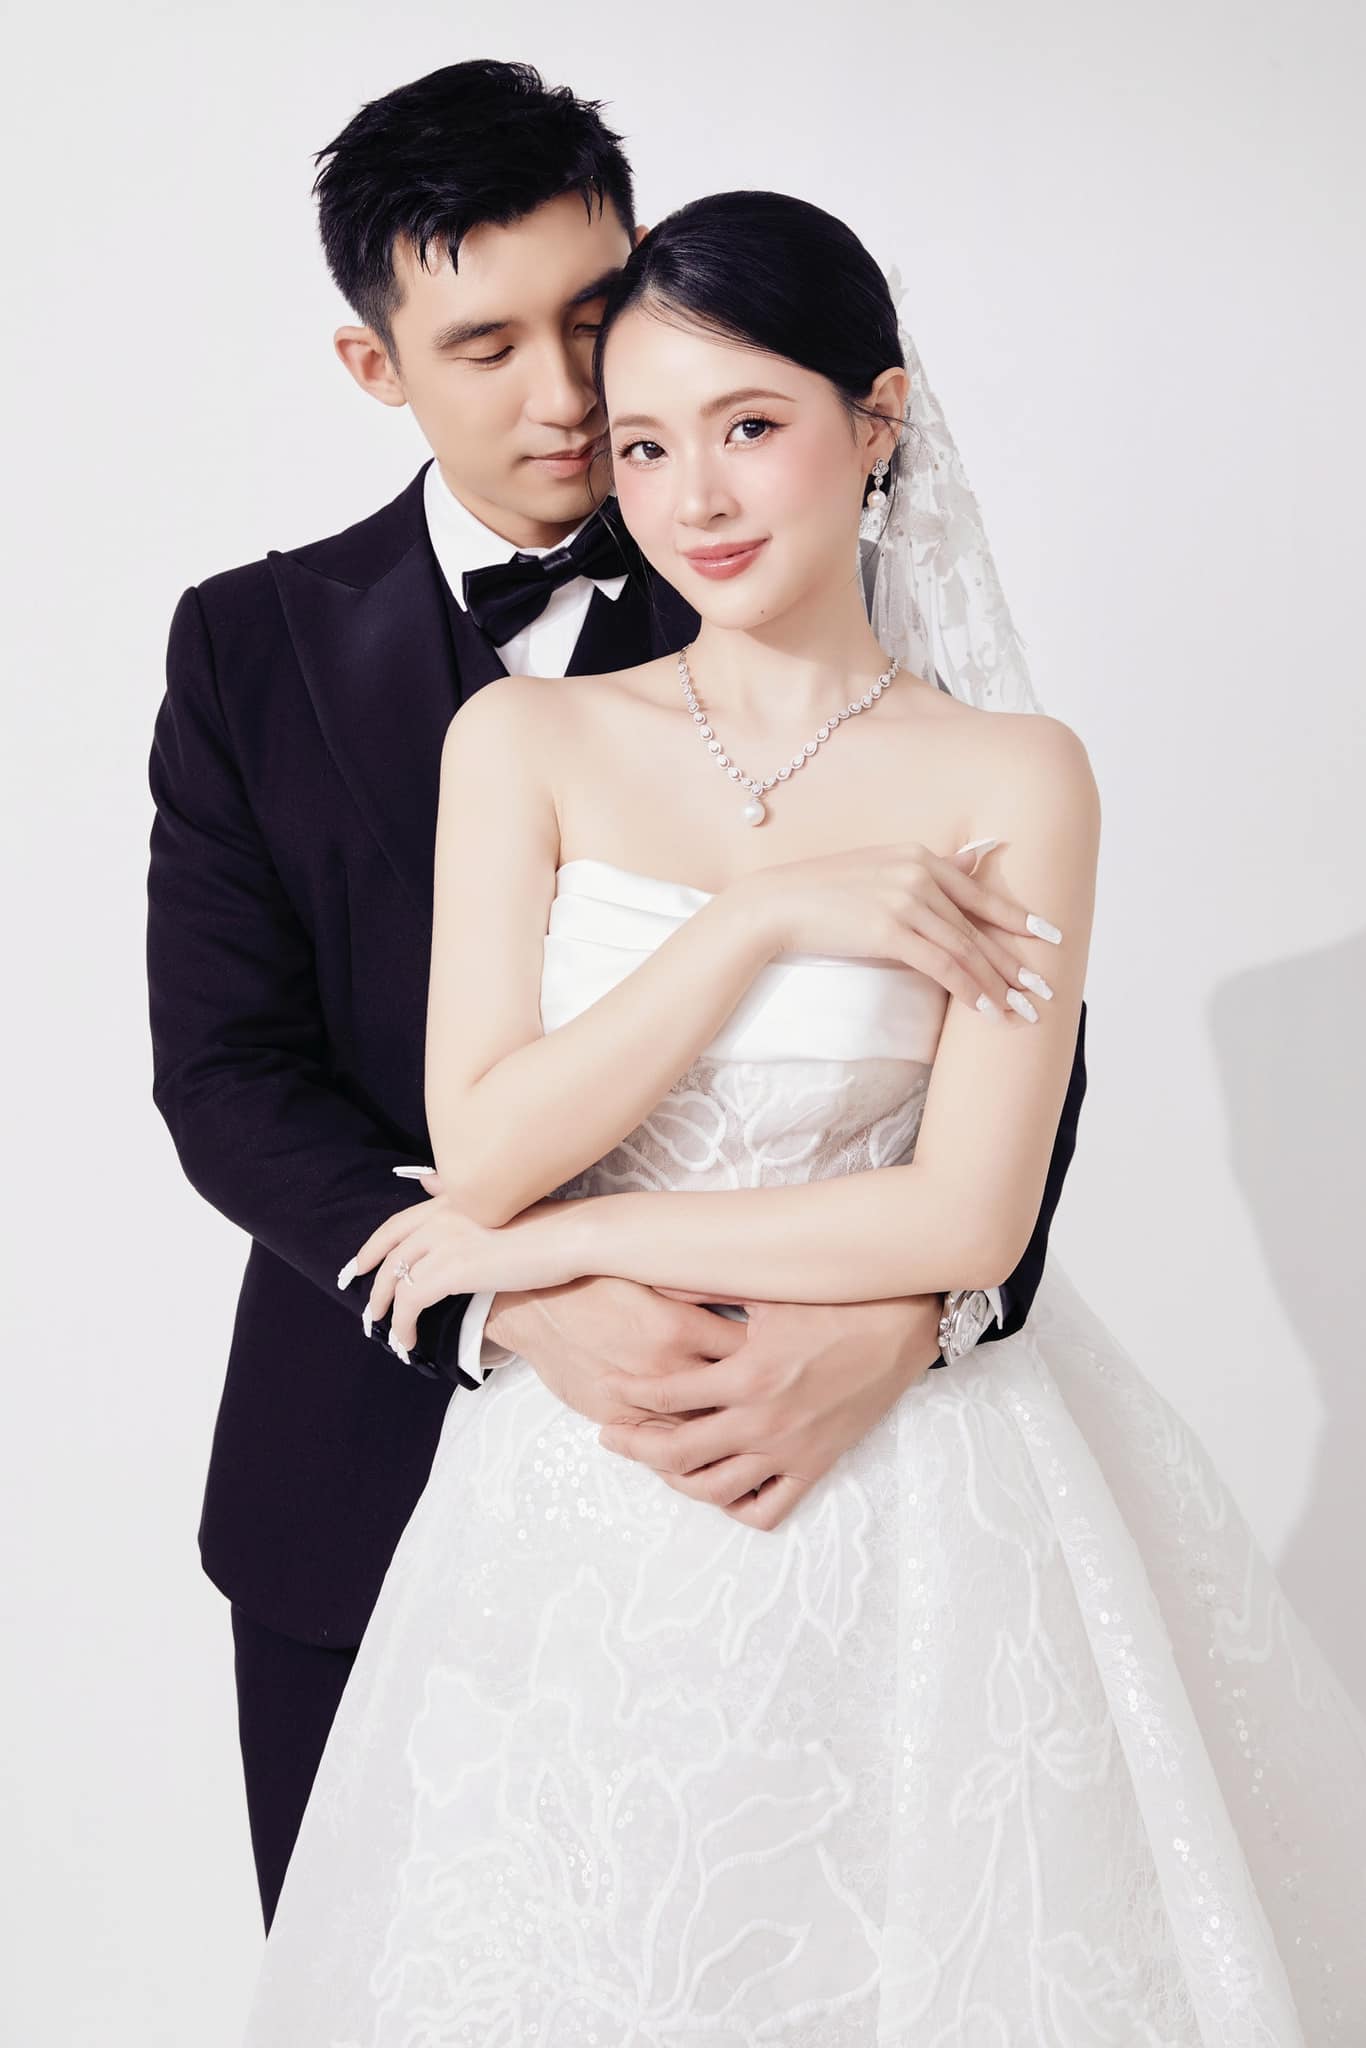 Midu xin netizen đừng chỉ trích vì 1 hành động sau đám cưới - Ảnh 8.